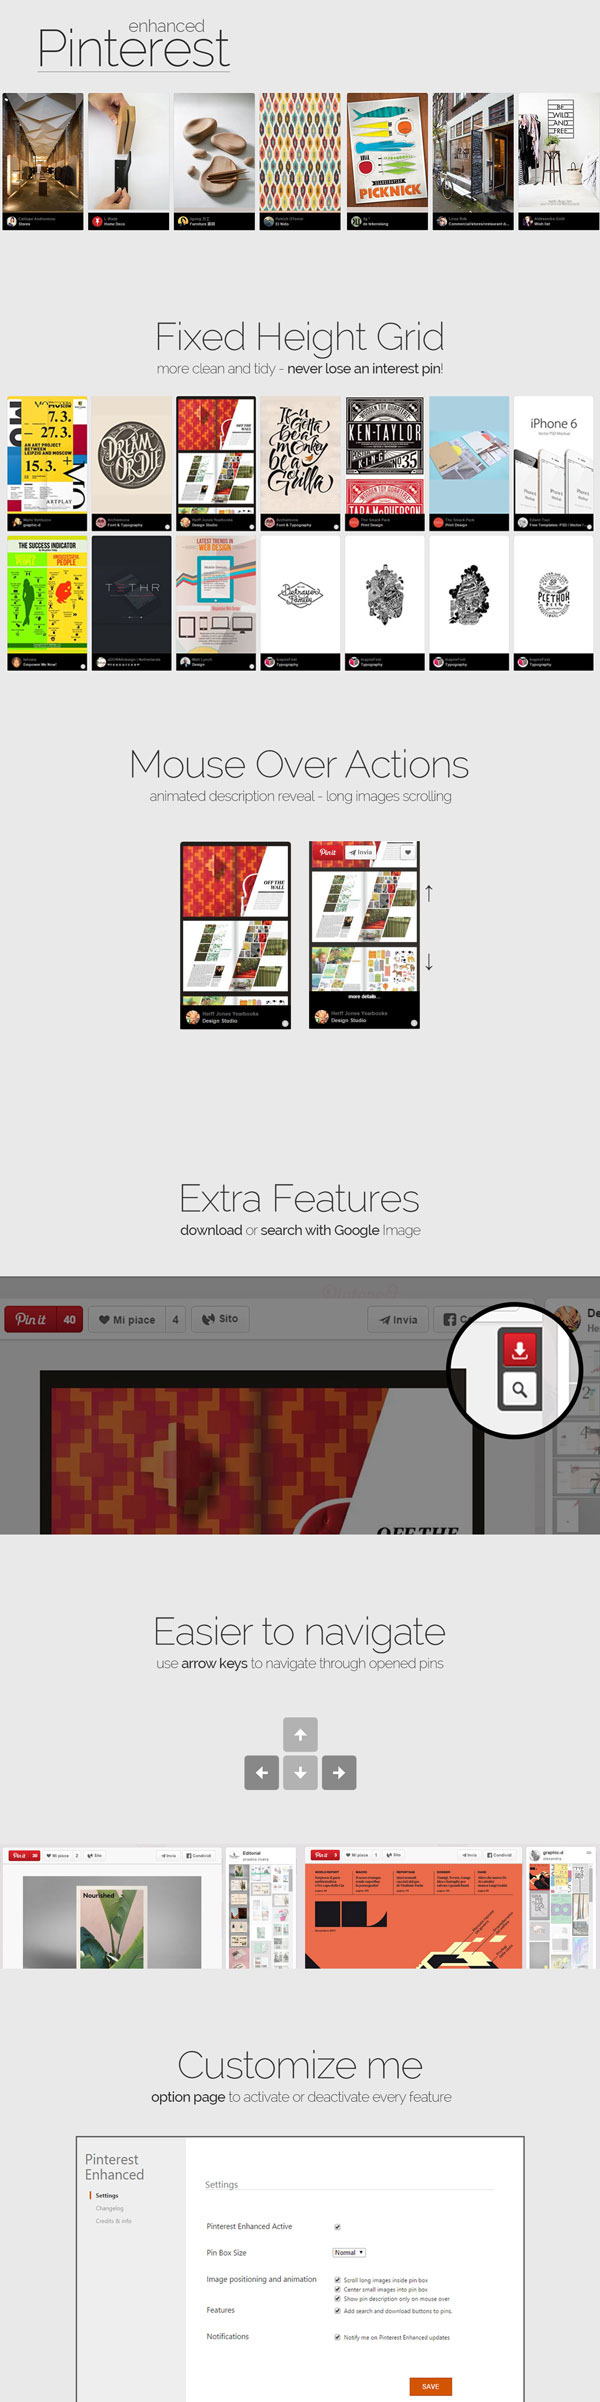 Pinterest Enhanced - Chrome Extension on Behance